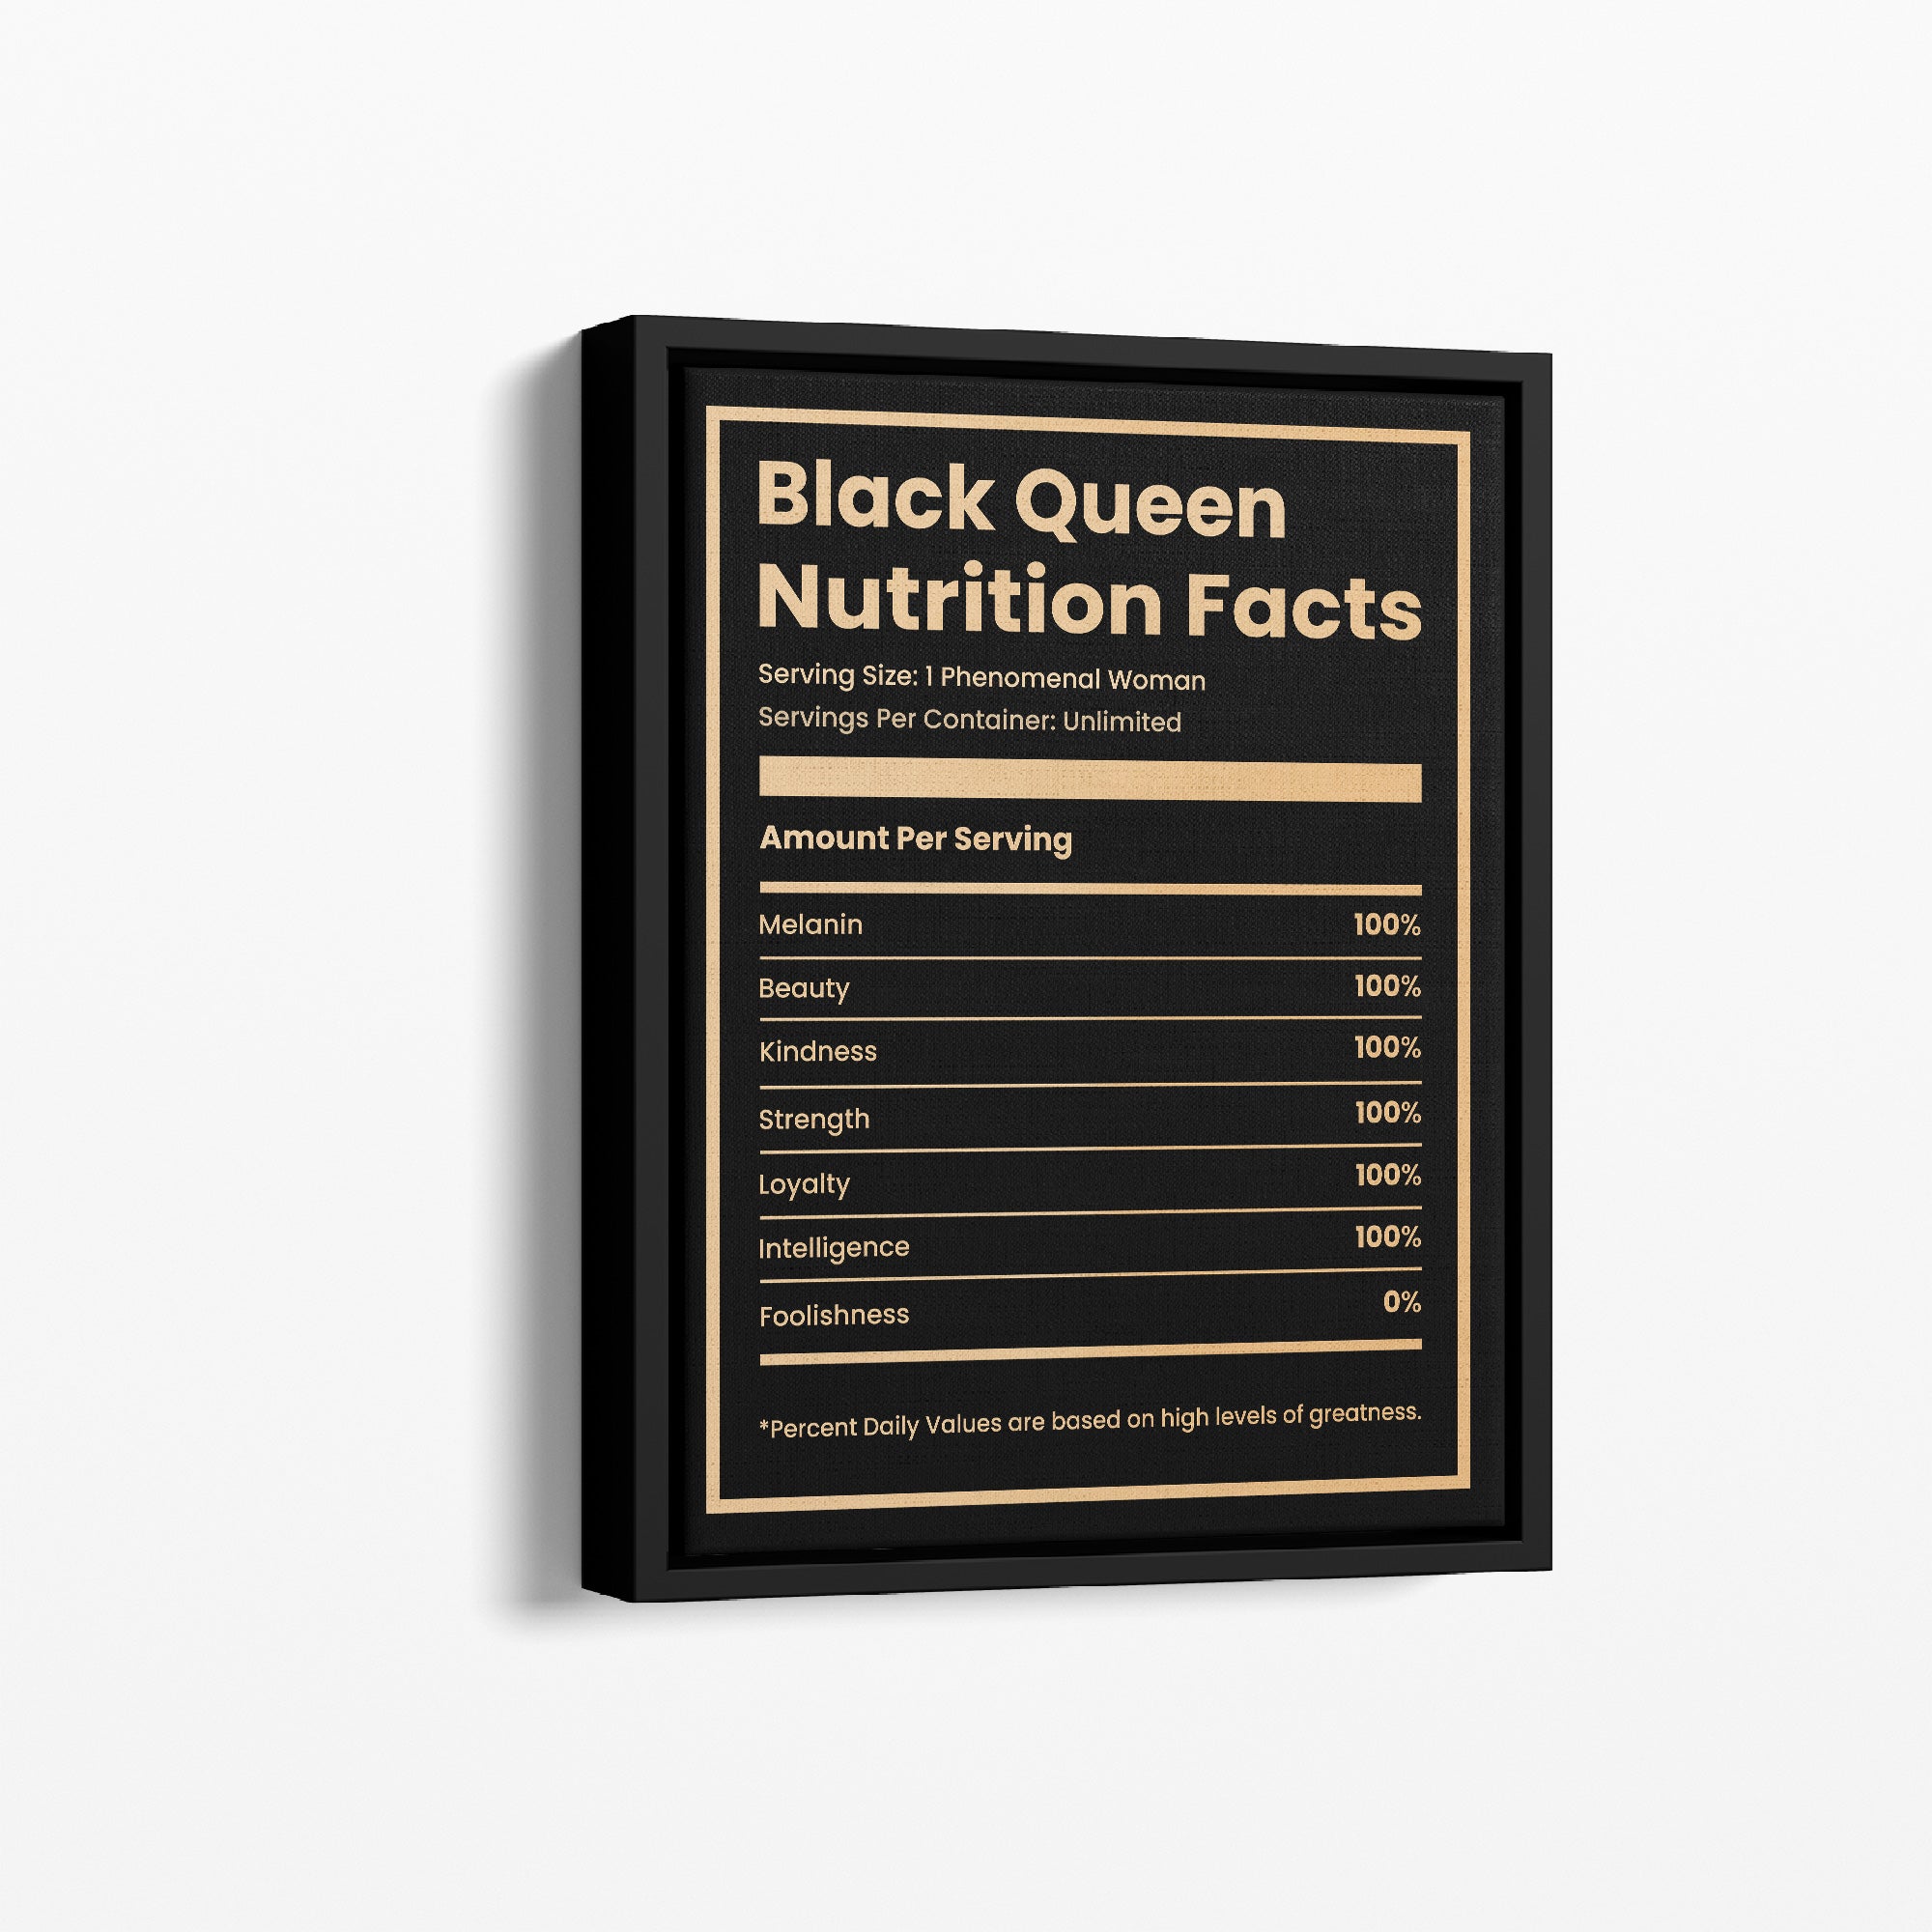 Black Queen Ingredients